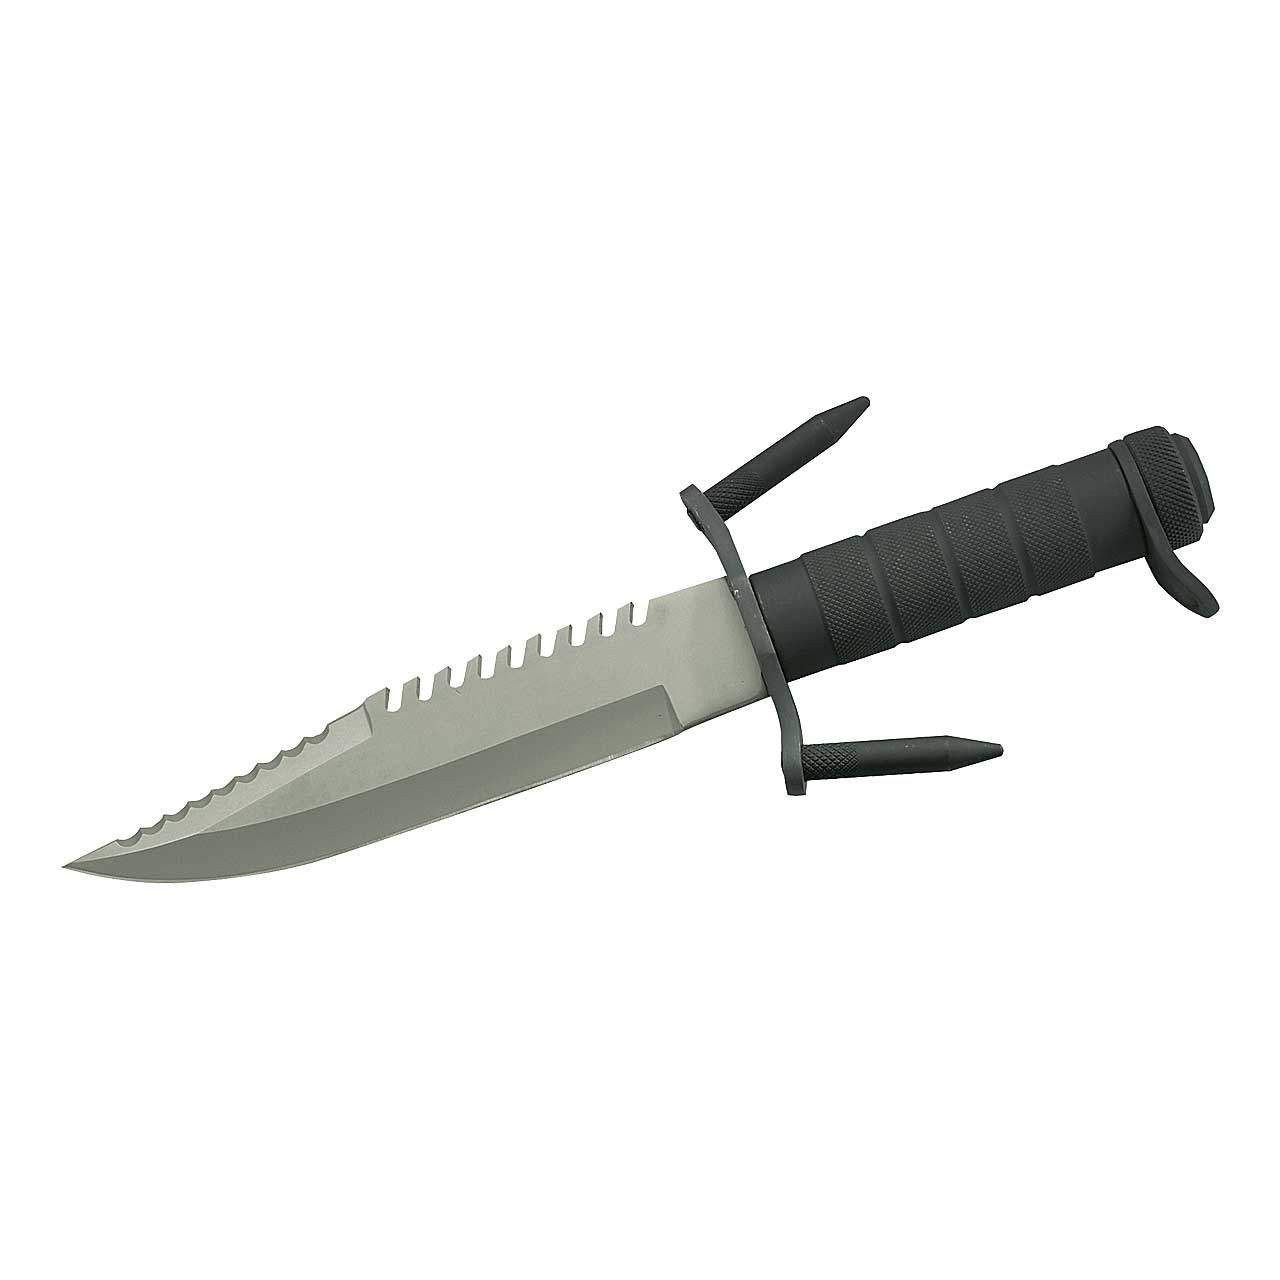 Herbertz Survival-Messer, Stahl AISI 420, Metall-Hohlgriff, Nylonscheide mit Vortasche, Zubehör